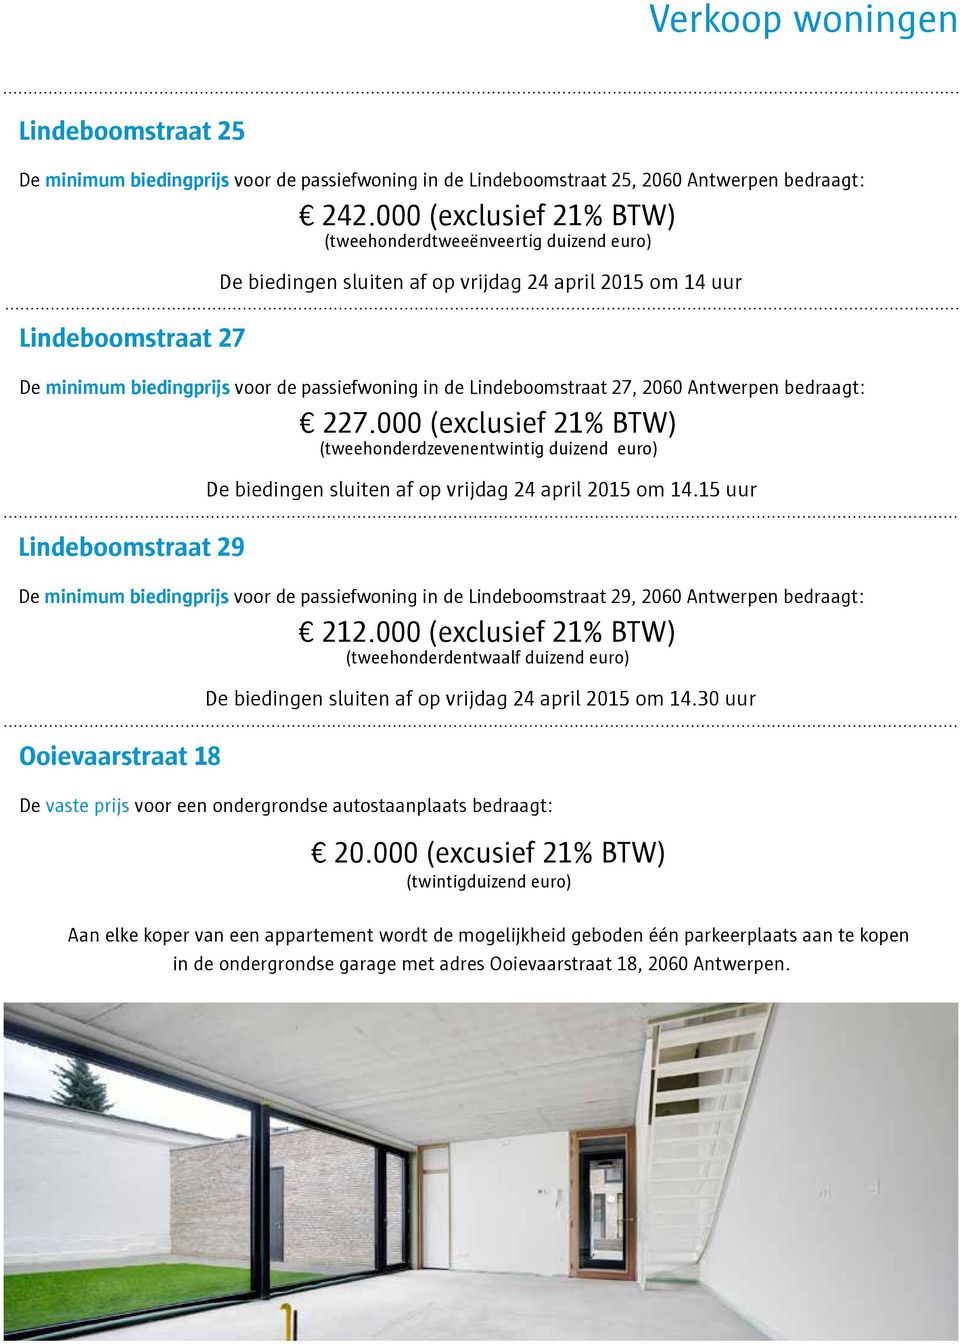 000 (exclusief 21% BTW) (tweehonderdzevenentwintig duizend euro) Lindeboomstraat 29 De biedingen sluiten af op vrijdag 24 april 2015 om 14.